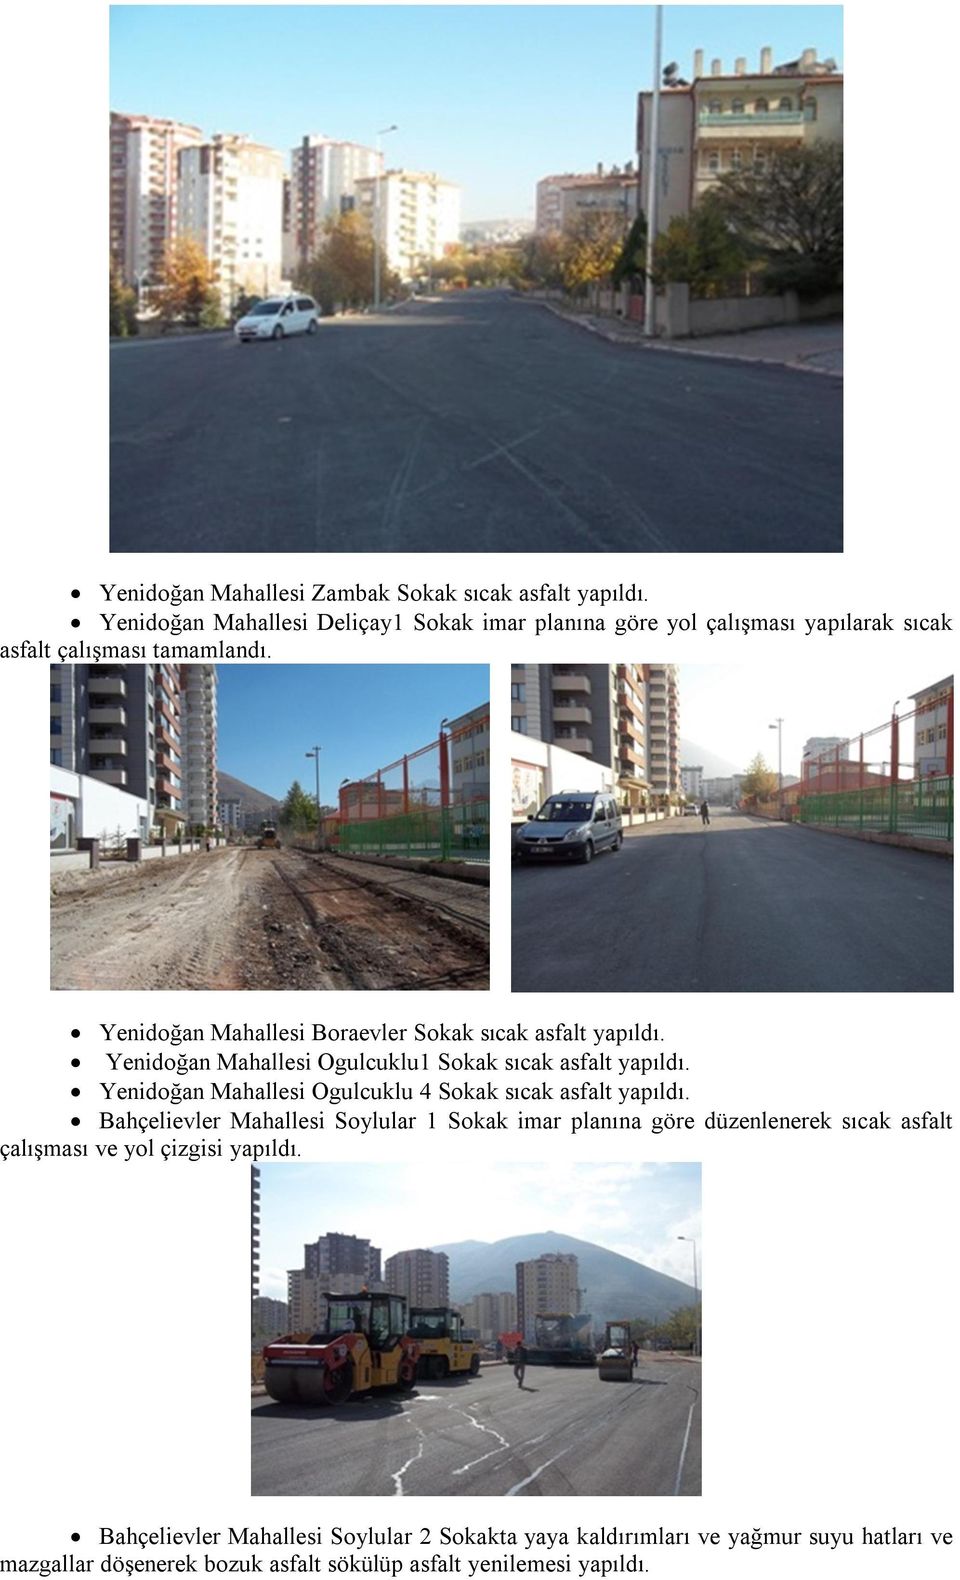 Yenidoğan Mahallesi Boraevler Sokak sıcak asfalt yapıldı. Yenidoğan Mahallesi Ogulcuklu1 Sokak sıcak asfalt yapıldı.